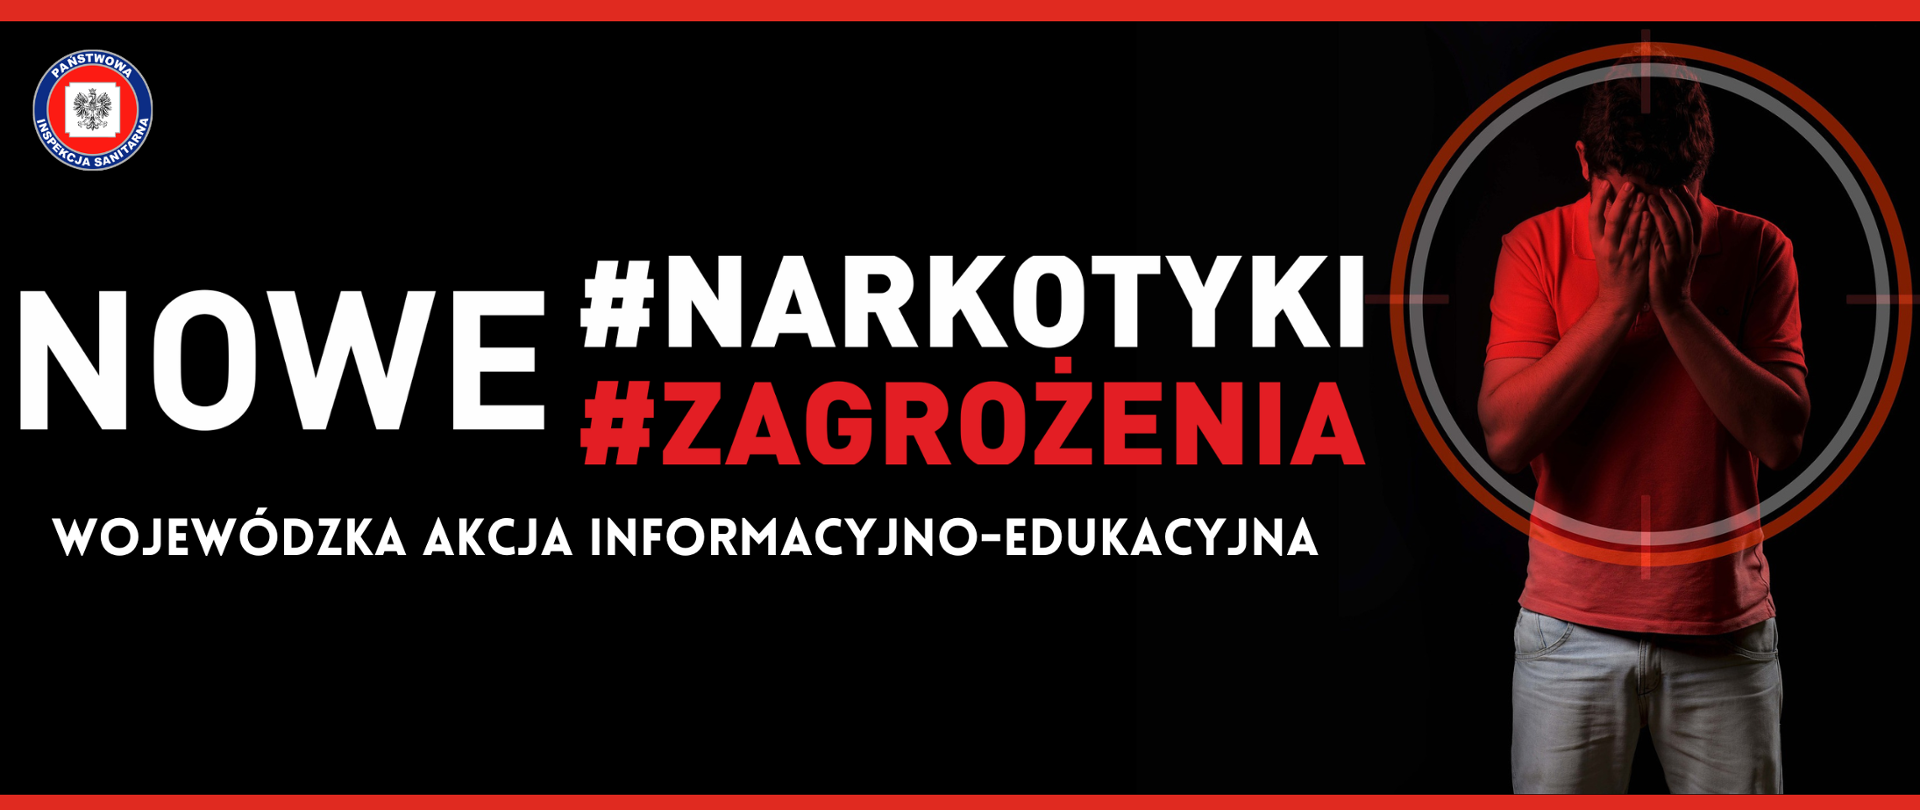 Czarny baner z napisem Nowe #narkotyki #zagrożenia Wojewódzka akcja informacyjno-edukacyjna. obok na celowniku mężczyzna trzymający się za twarz